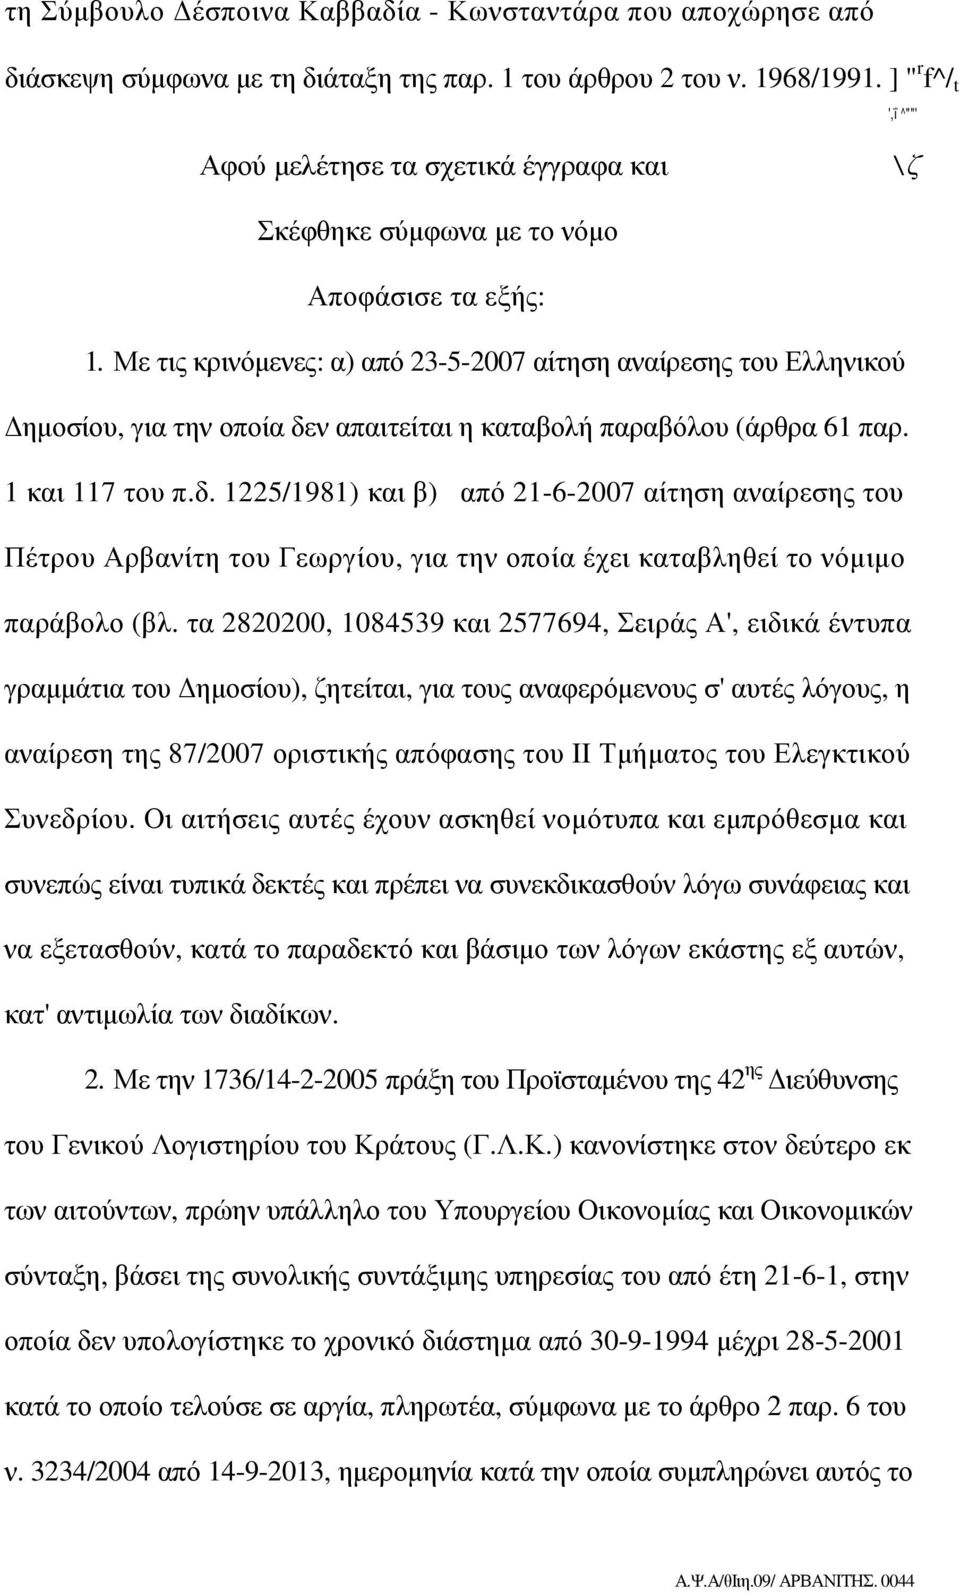 Με τις κρινόµενες: α) από 23-5-2007 αίτηση αναίρεσης του Ελληνικού ηµοσίου, για την οποία δε